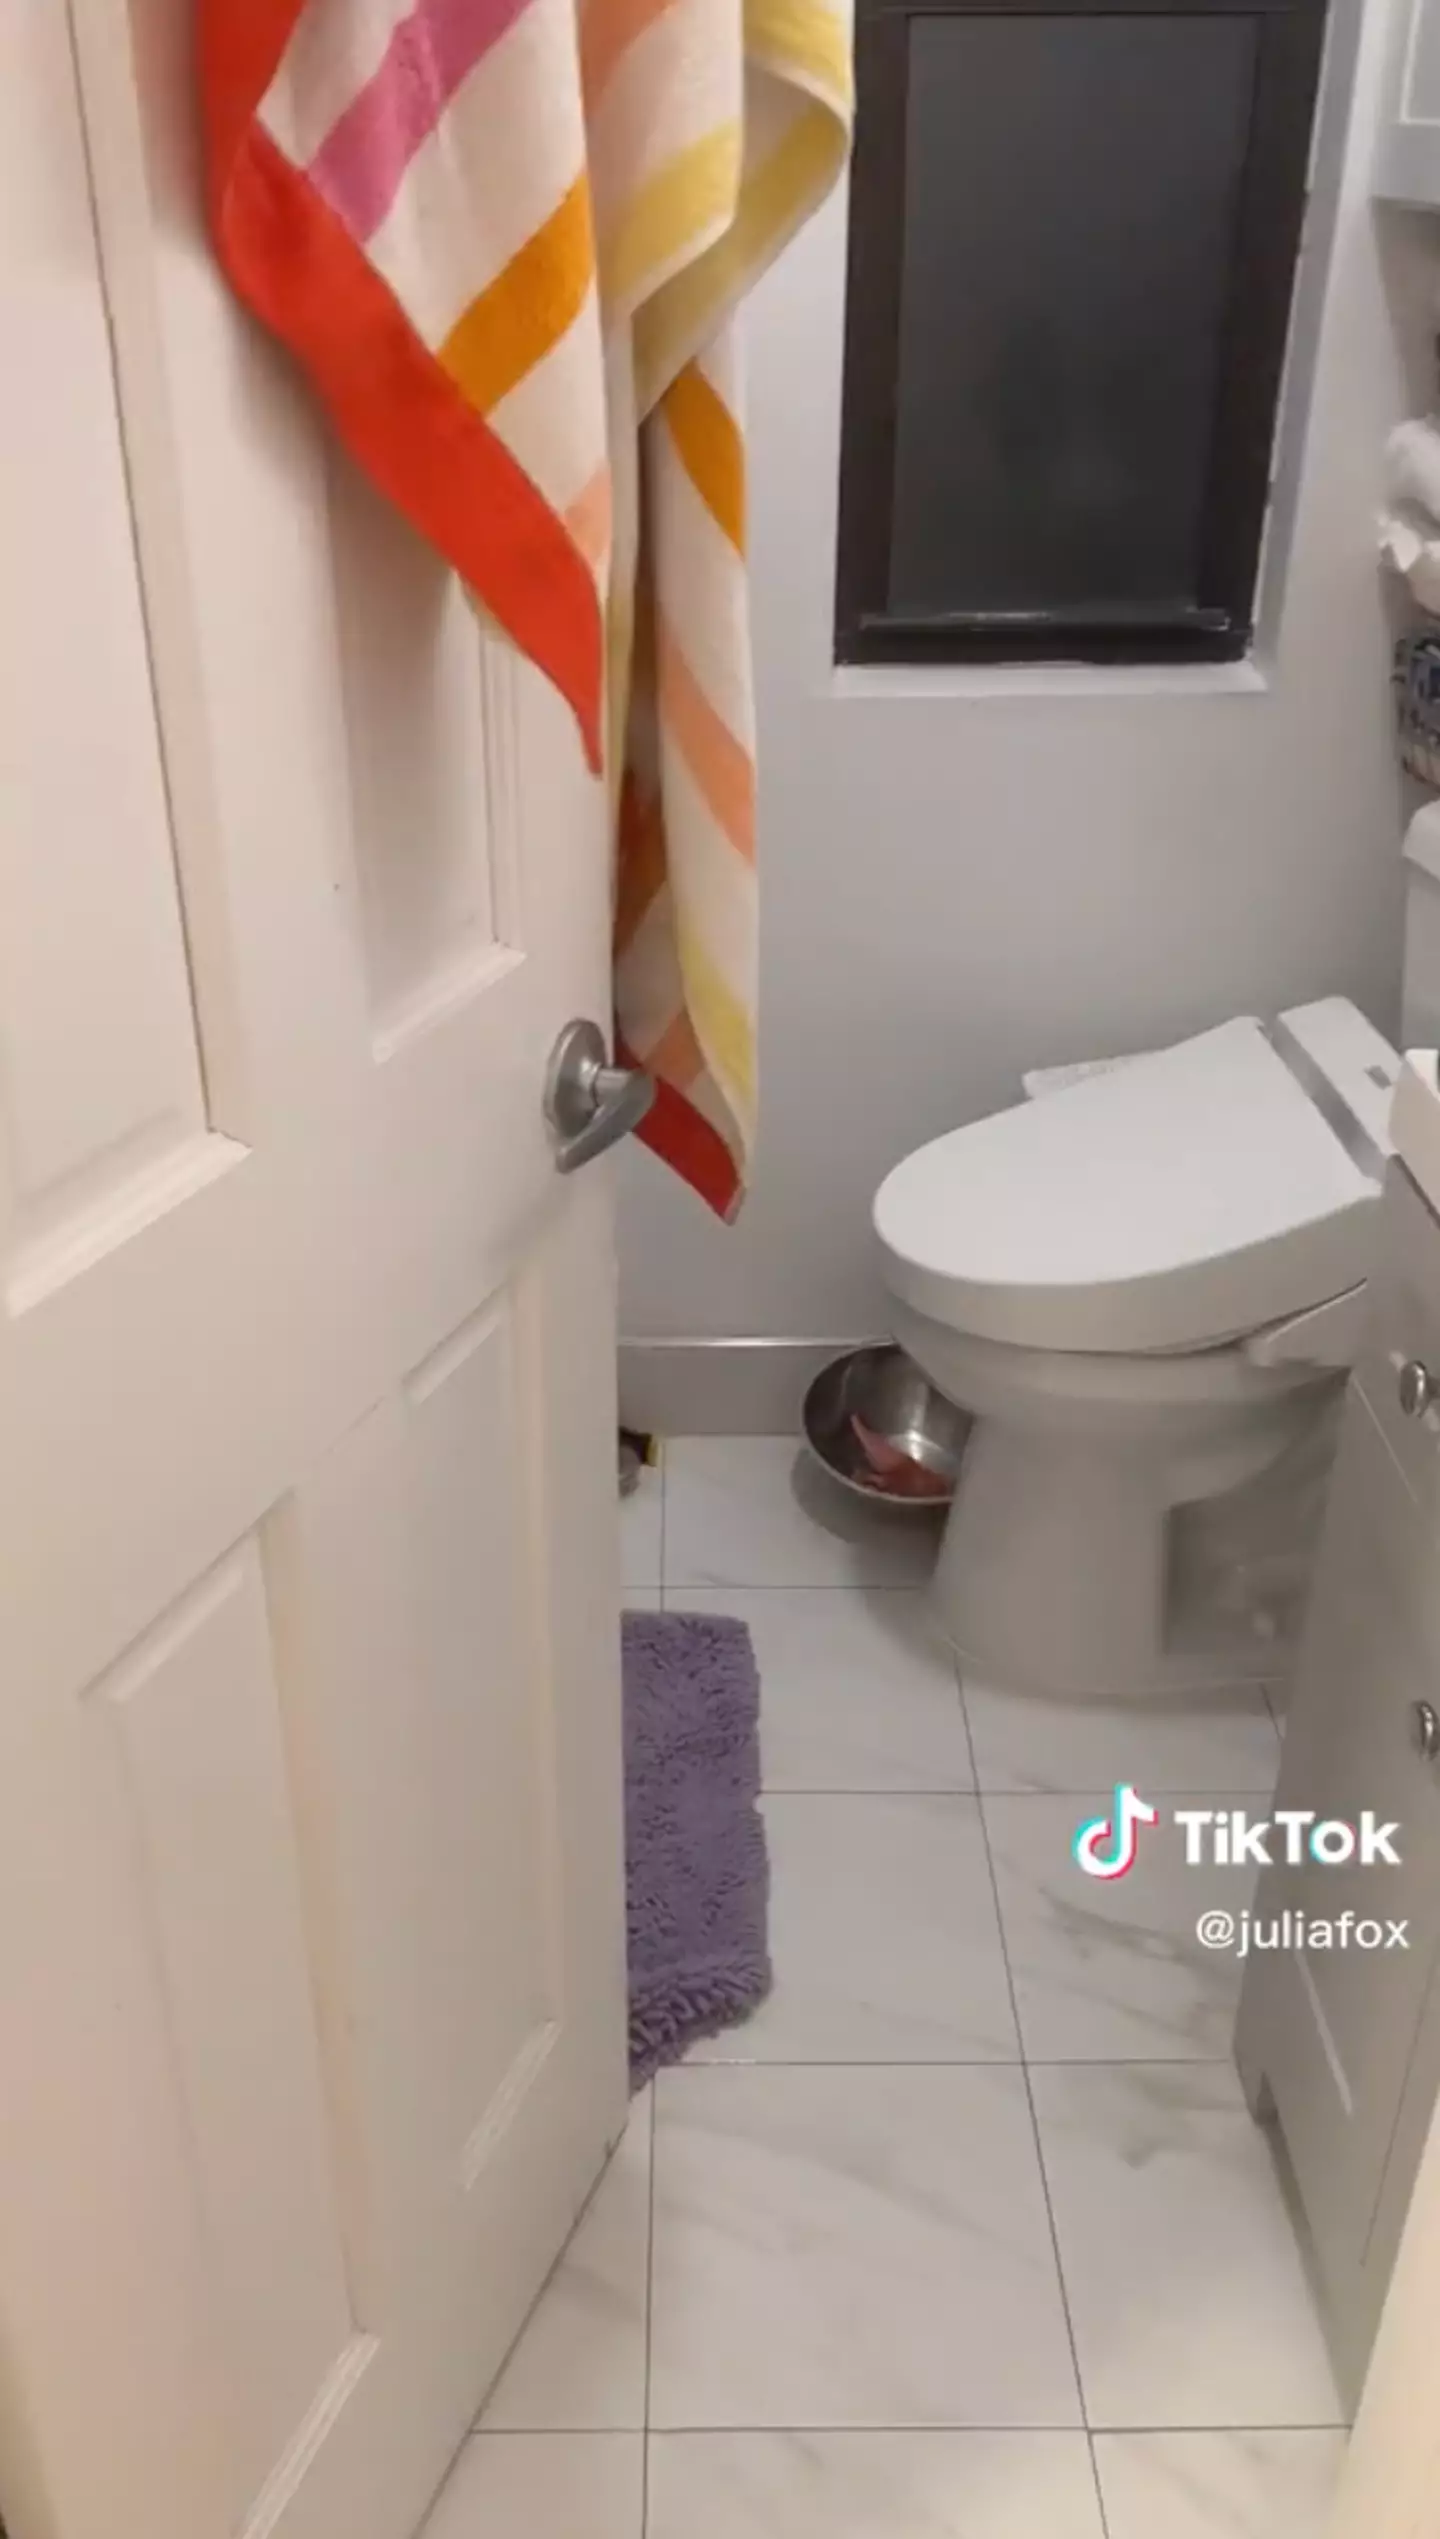 The 'tiny' bathroom.